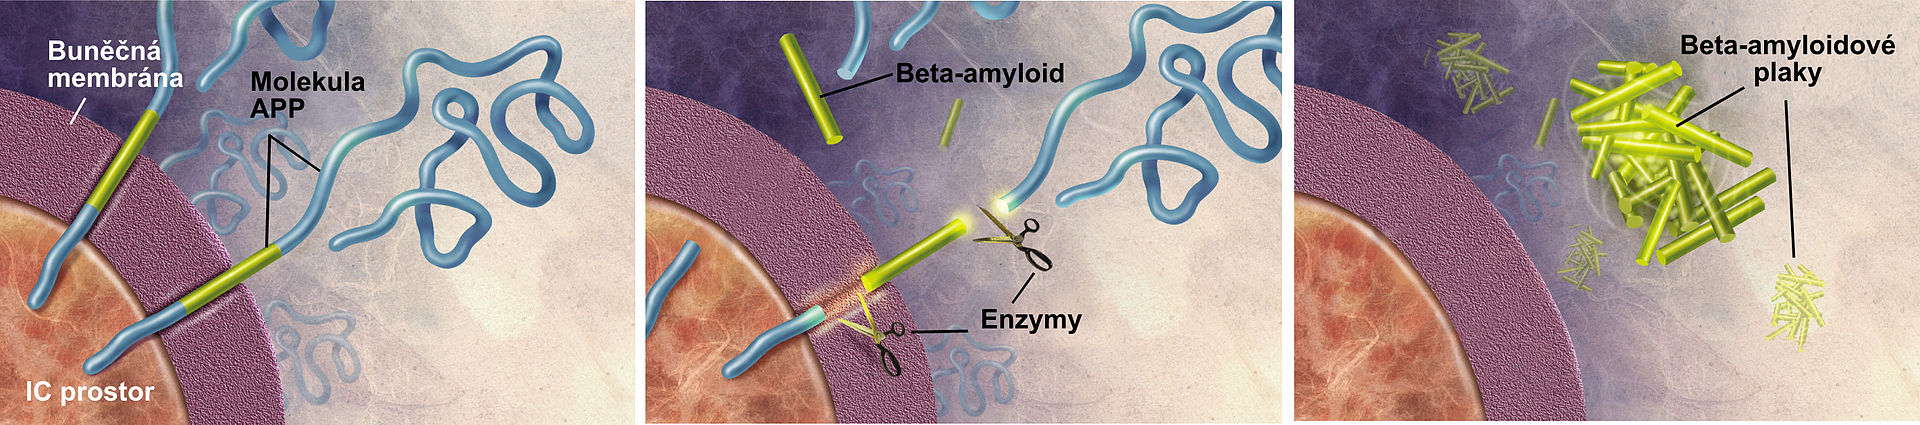 Enzymy působí na APP (Amyloid prekurzorový protein) and rozdělují je na fragmenty, z nichž jeden je nazýván beta-amyloid a má úhlavní roli v tvorbě Alzheimerových plaků.  Kredit: Alzheimer's Disease Education and Referral Center,  National Institute 